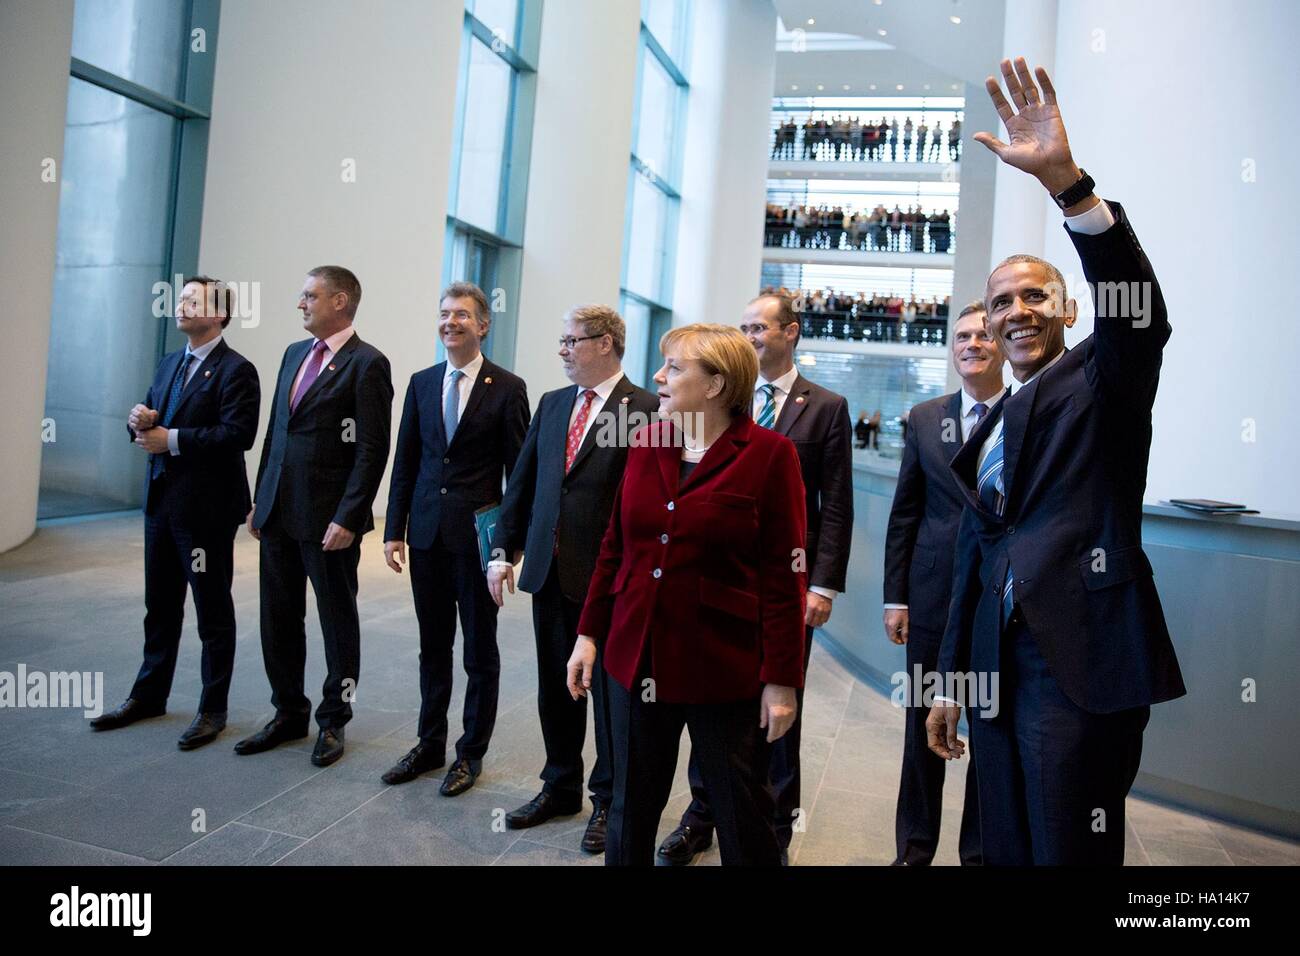 Le président des États-Unis, Barack Obama, aux côtés des travailleurs du gouvernement de vagues la Chancelière allemande, Angela Merkel, et la délégation allemande à la chancellerie allemande, 17 novembre 2016 à Berlin, Allemagne. Banque D'Images